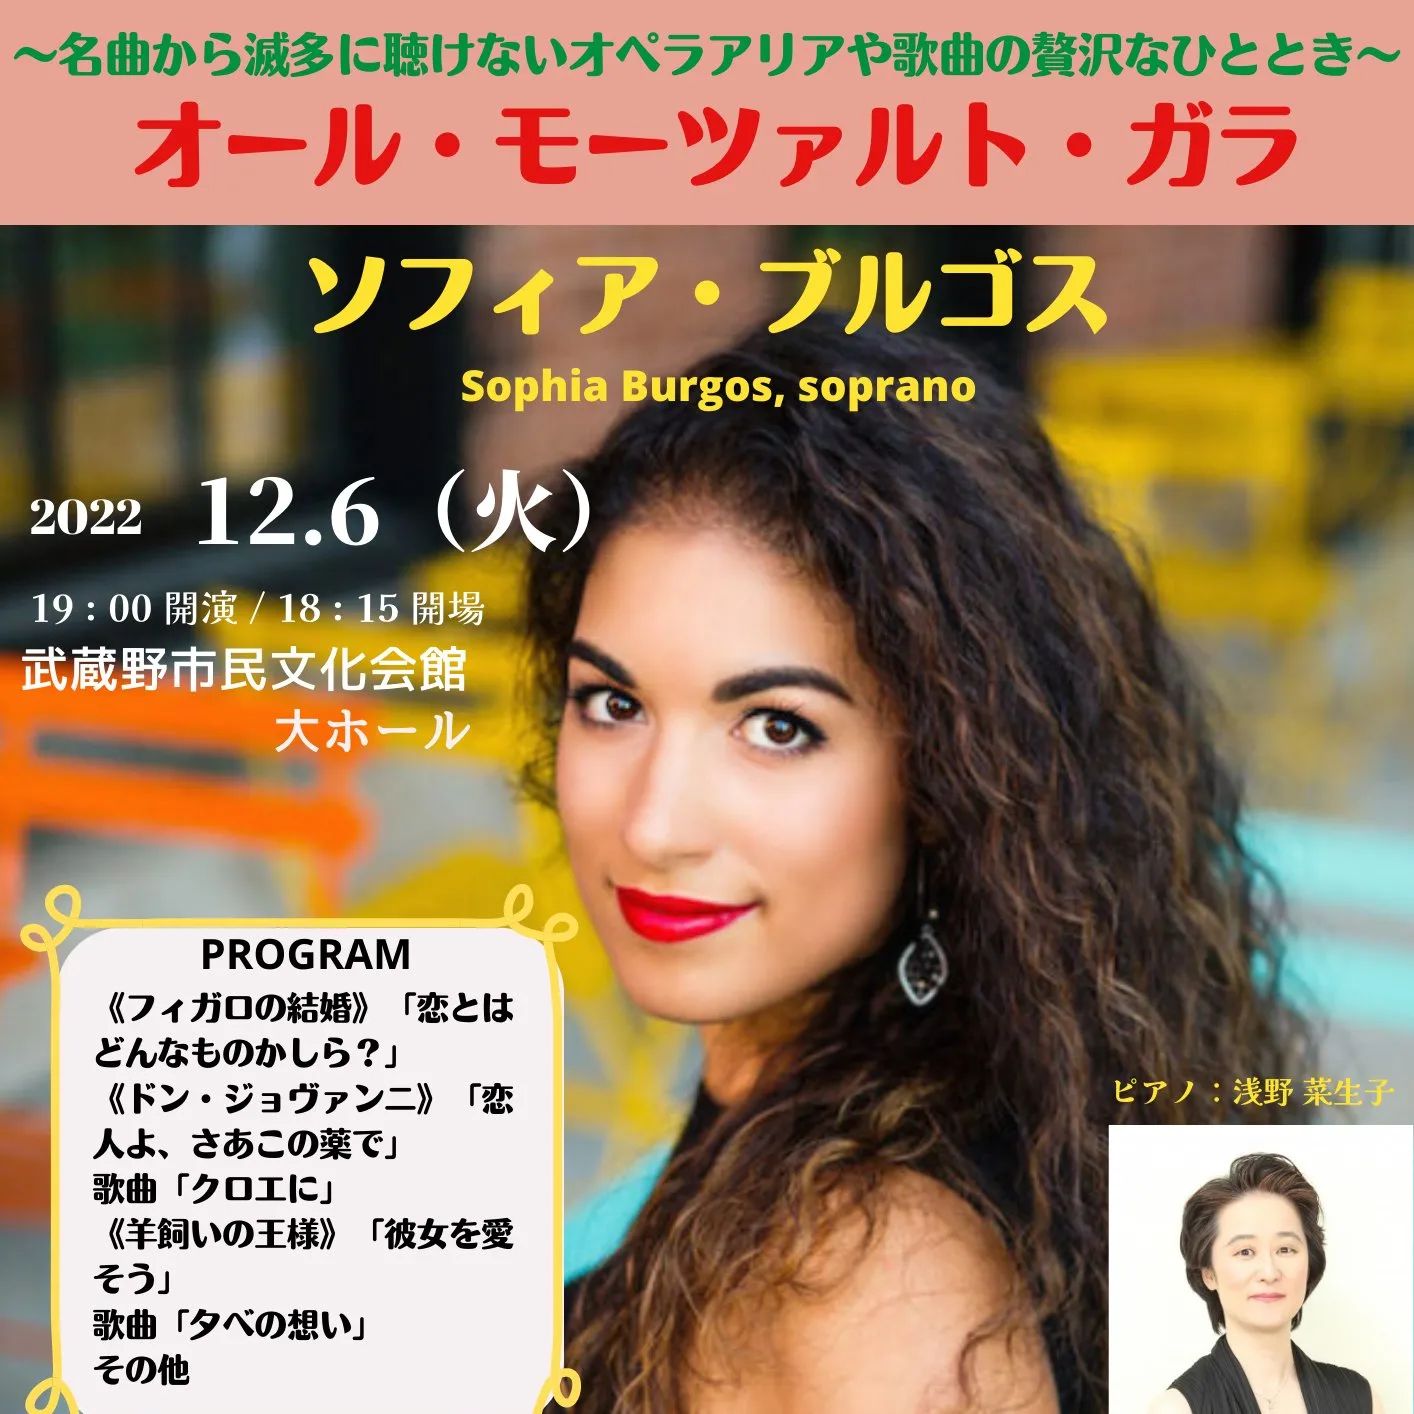 ソフィア・ブルゴスのツアー最後は東京の武蔵野文化会館の大ホールの大ステージで。今回はオペラアリアもありますので、オペラを聞いてる気分を味わえるかも。
チケットはこちらから好評発売中
https://myticketnavi.com/event/detail/id/1274525830